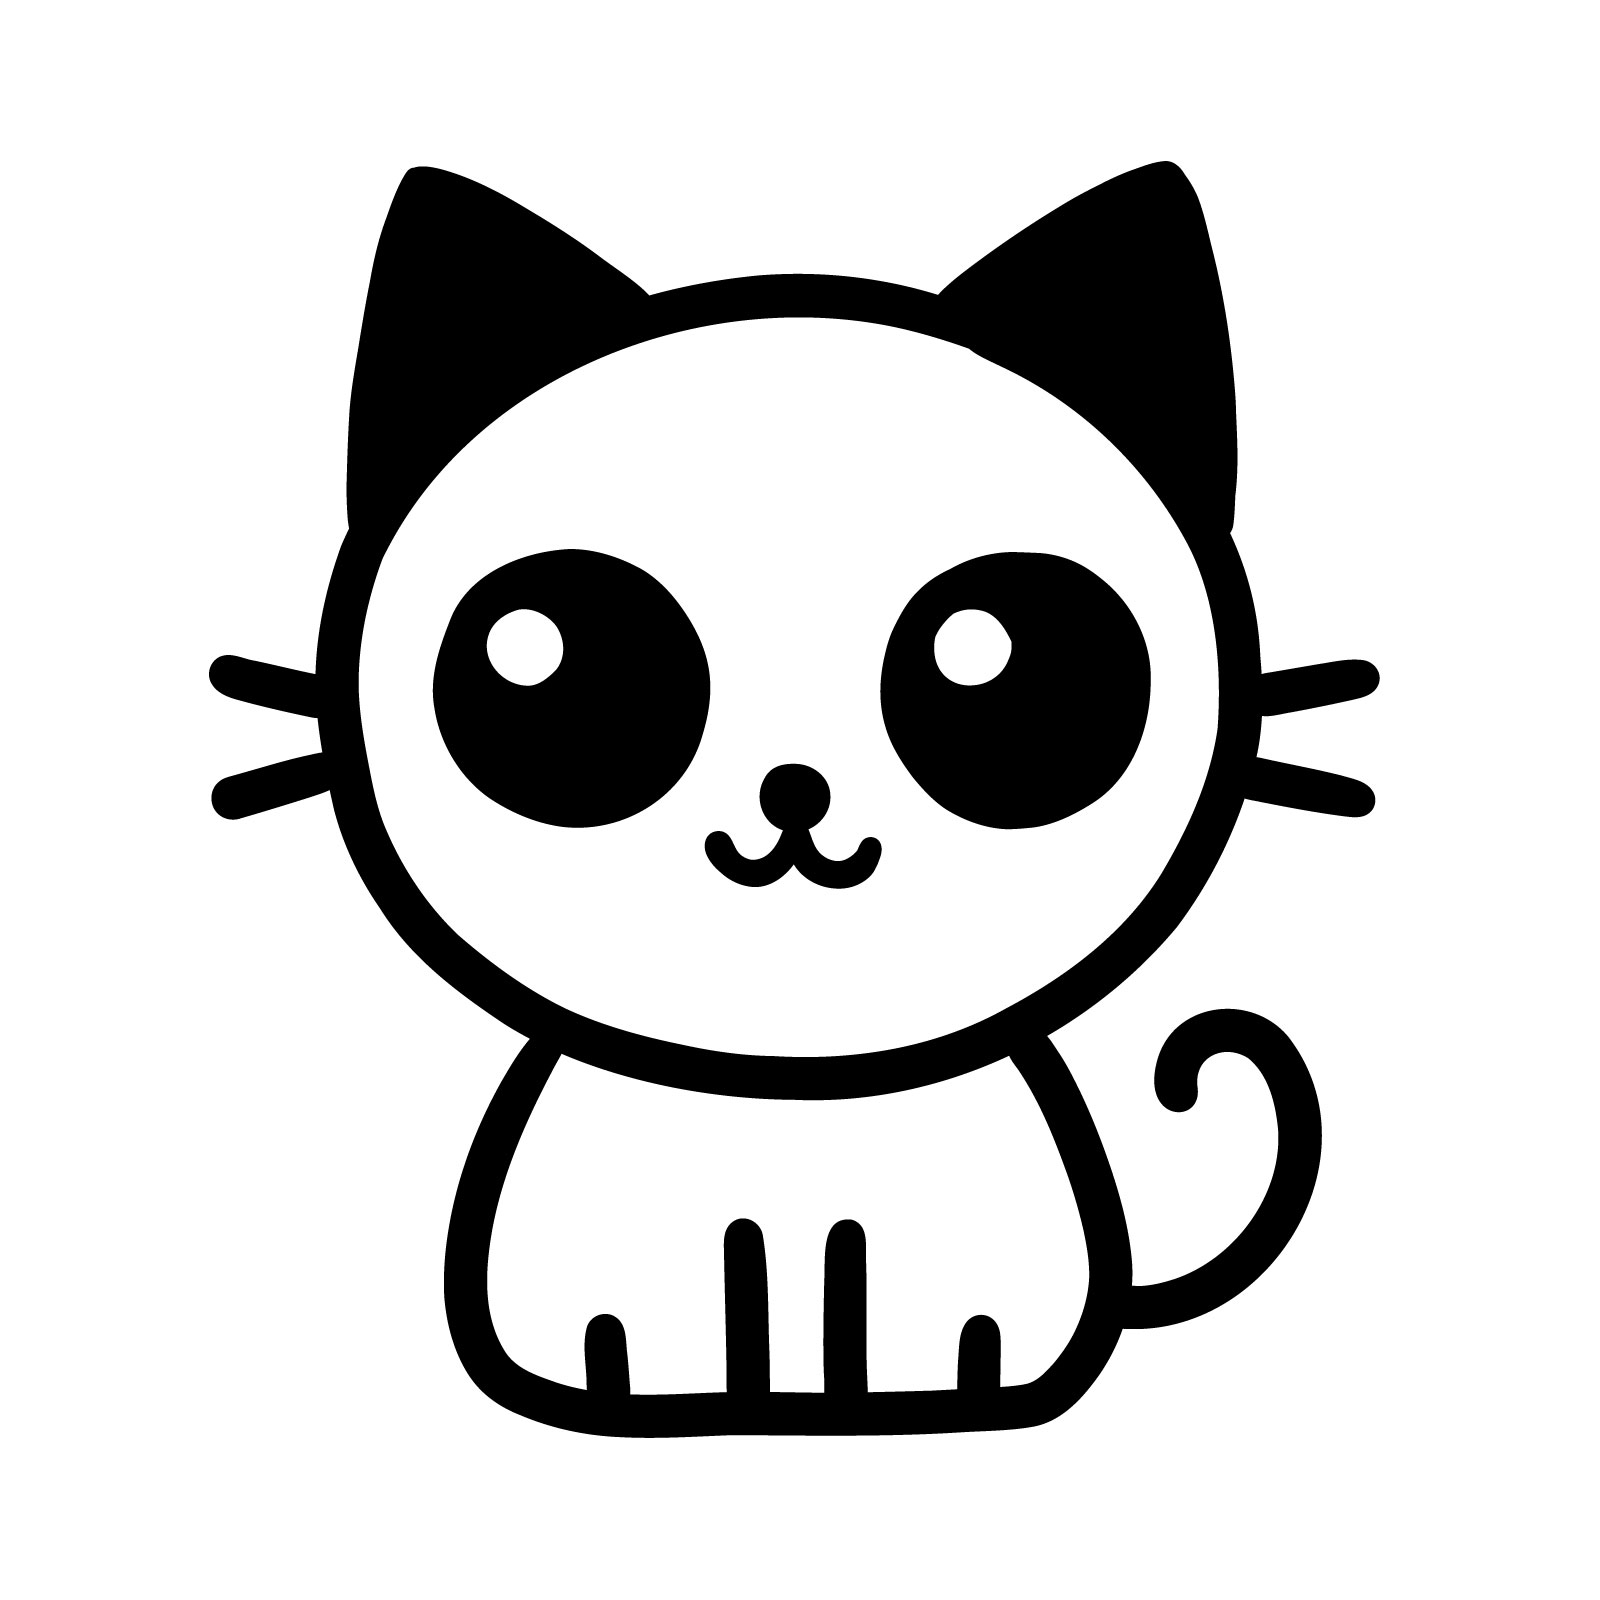 Simple Cartoon Cat Drawing in 5 Easy Steps